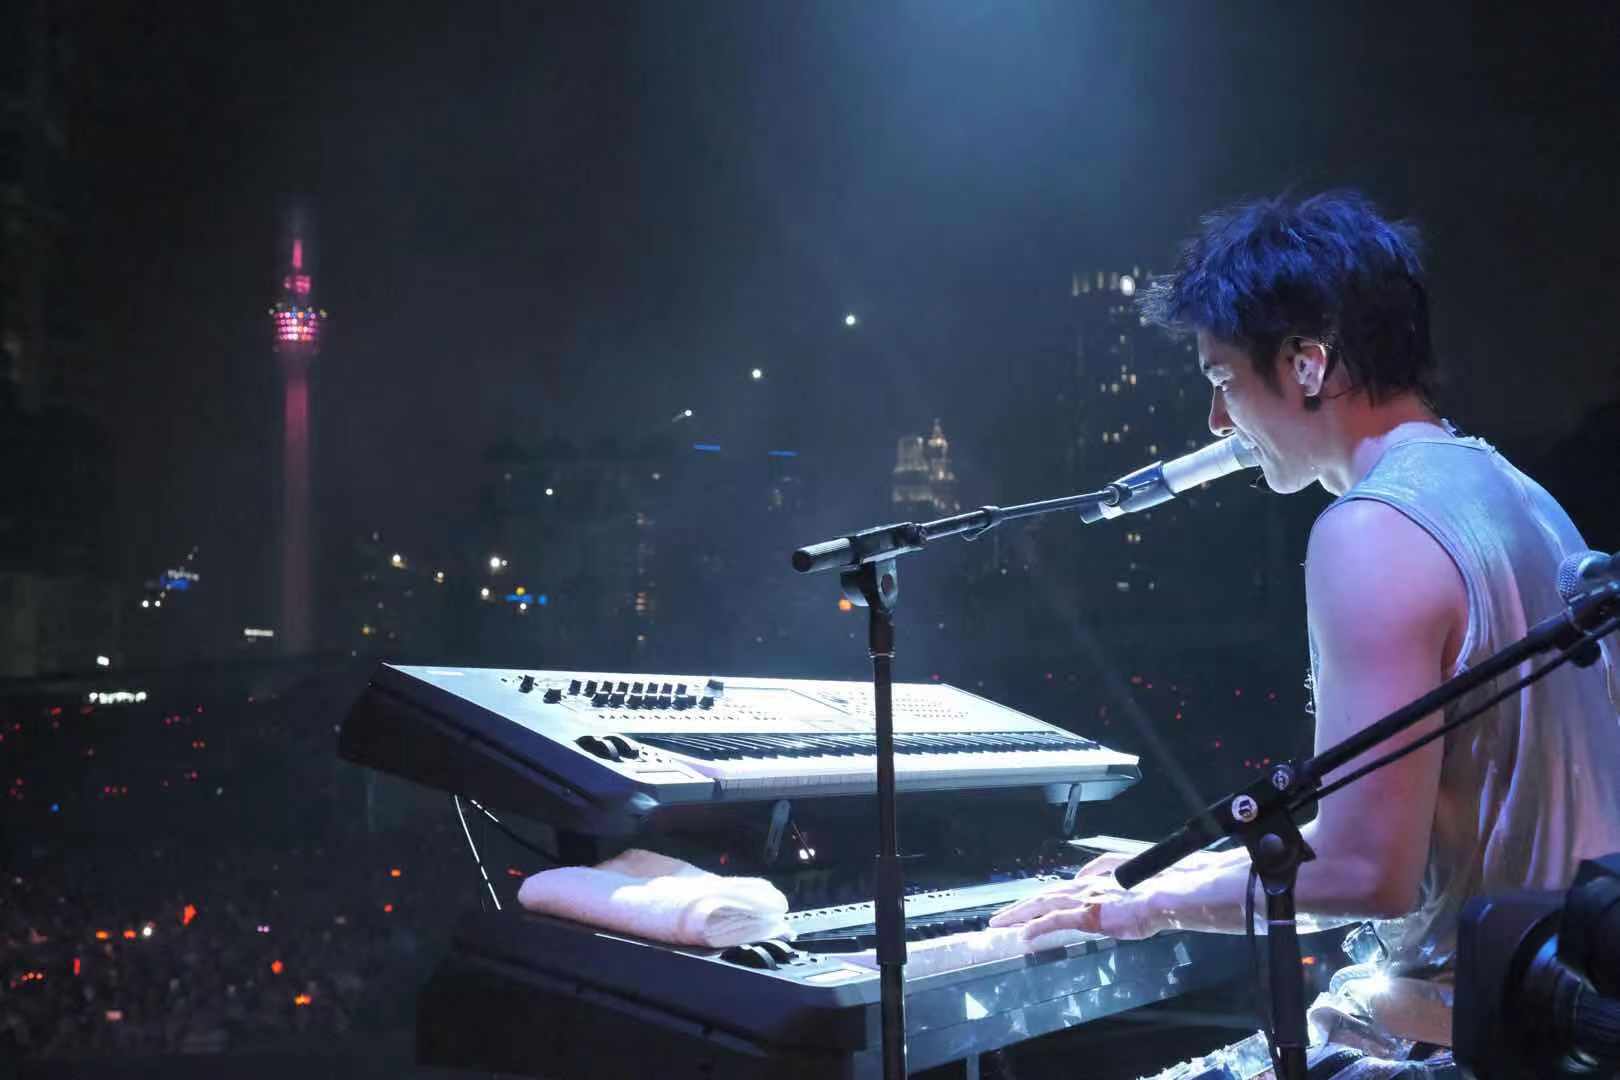 王力宏不负其音乐才子称号，在演唱会演奏了多项乐器包括Keyboard。-星艺娱乐提供-